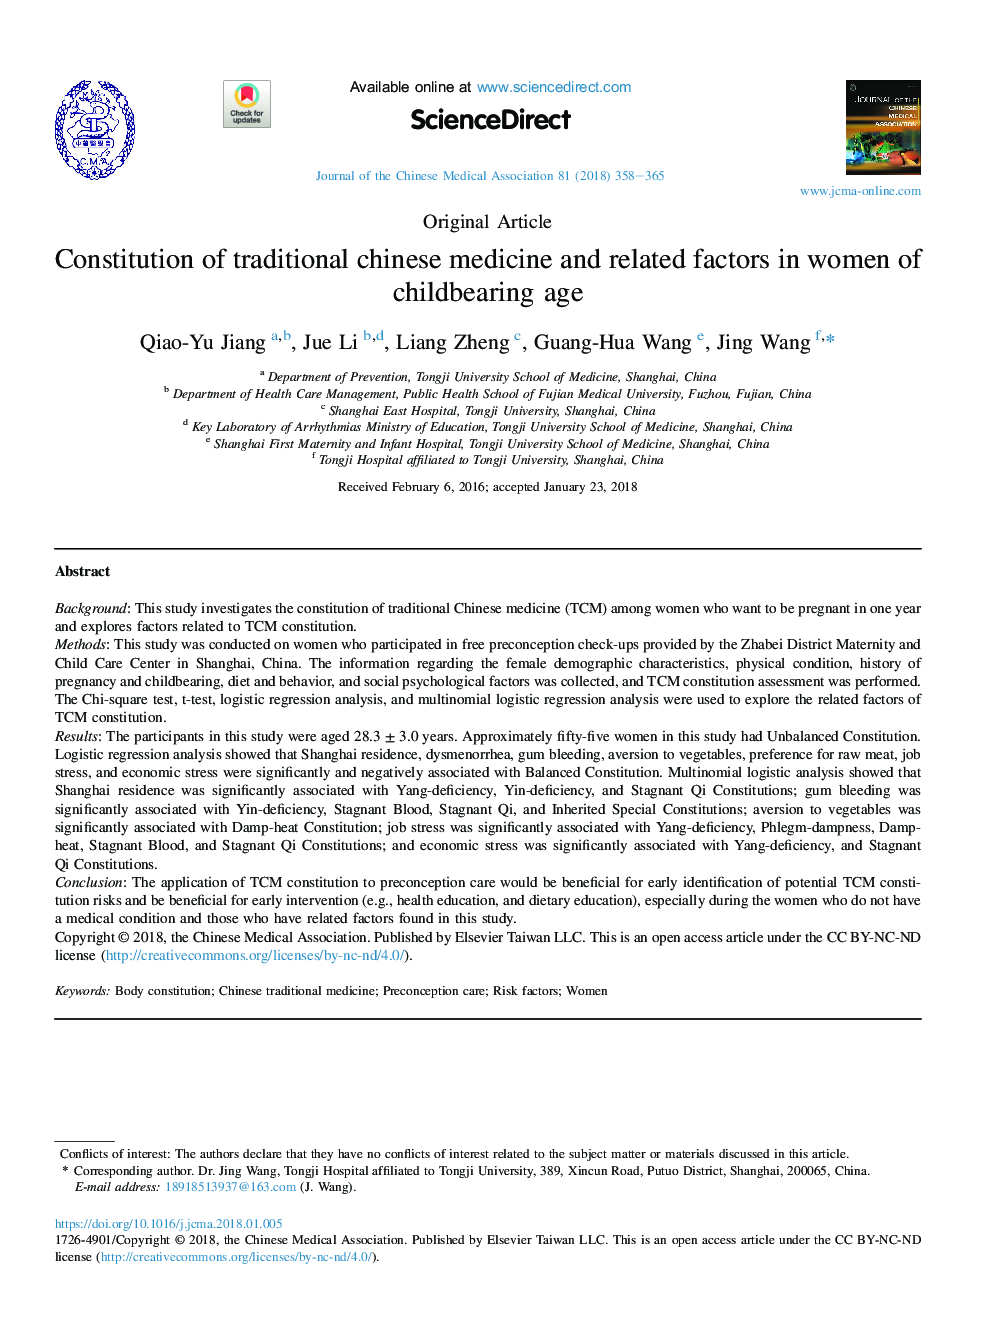 قانون اساسی پزشکی سنتی چینی و عوامل مرتبط با آن در زنان باروری 